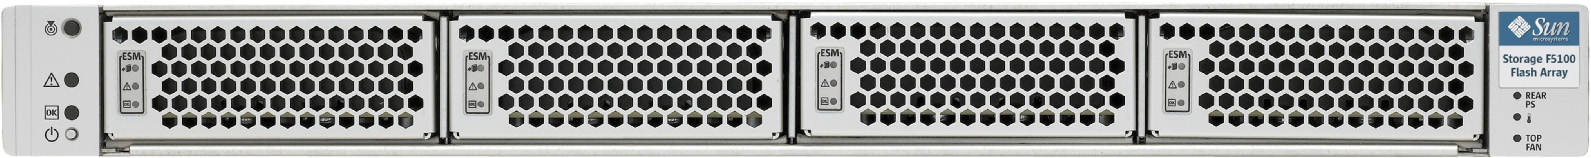 Sun Storage F5100 Front Zoom